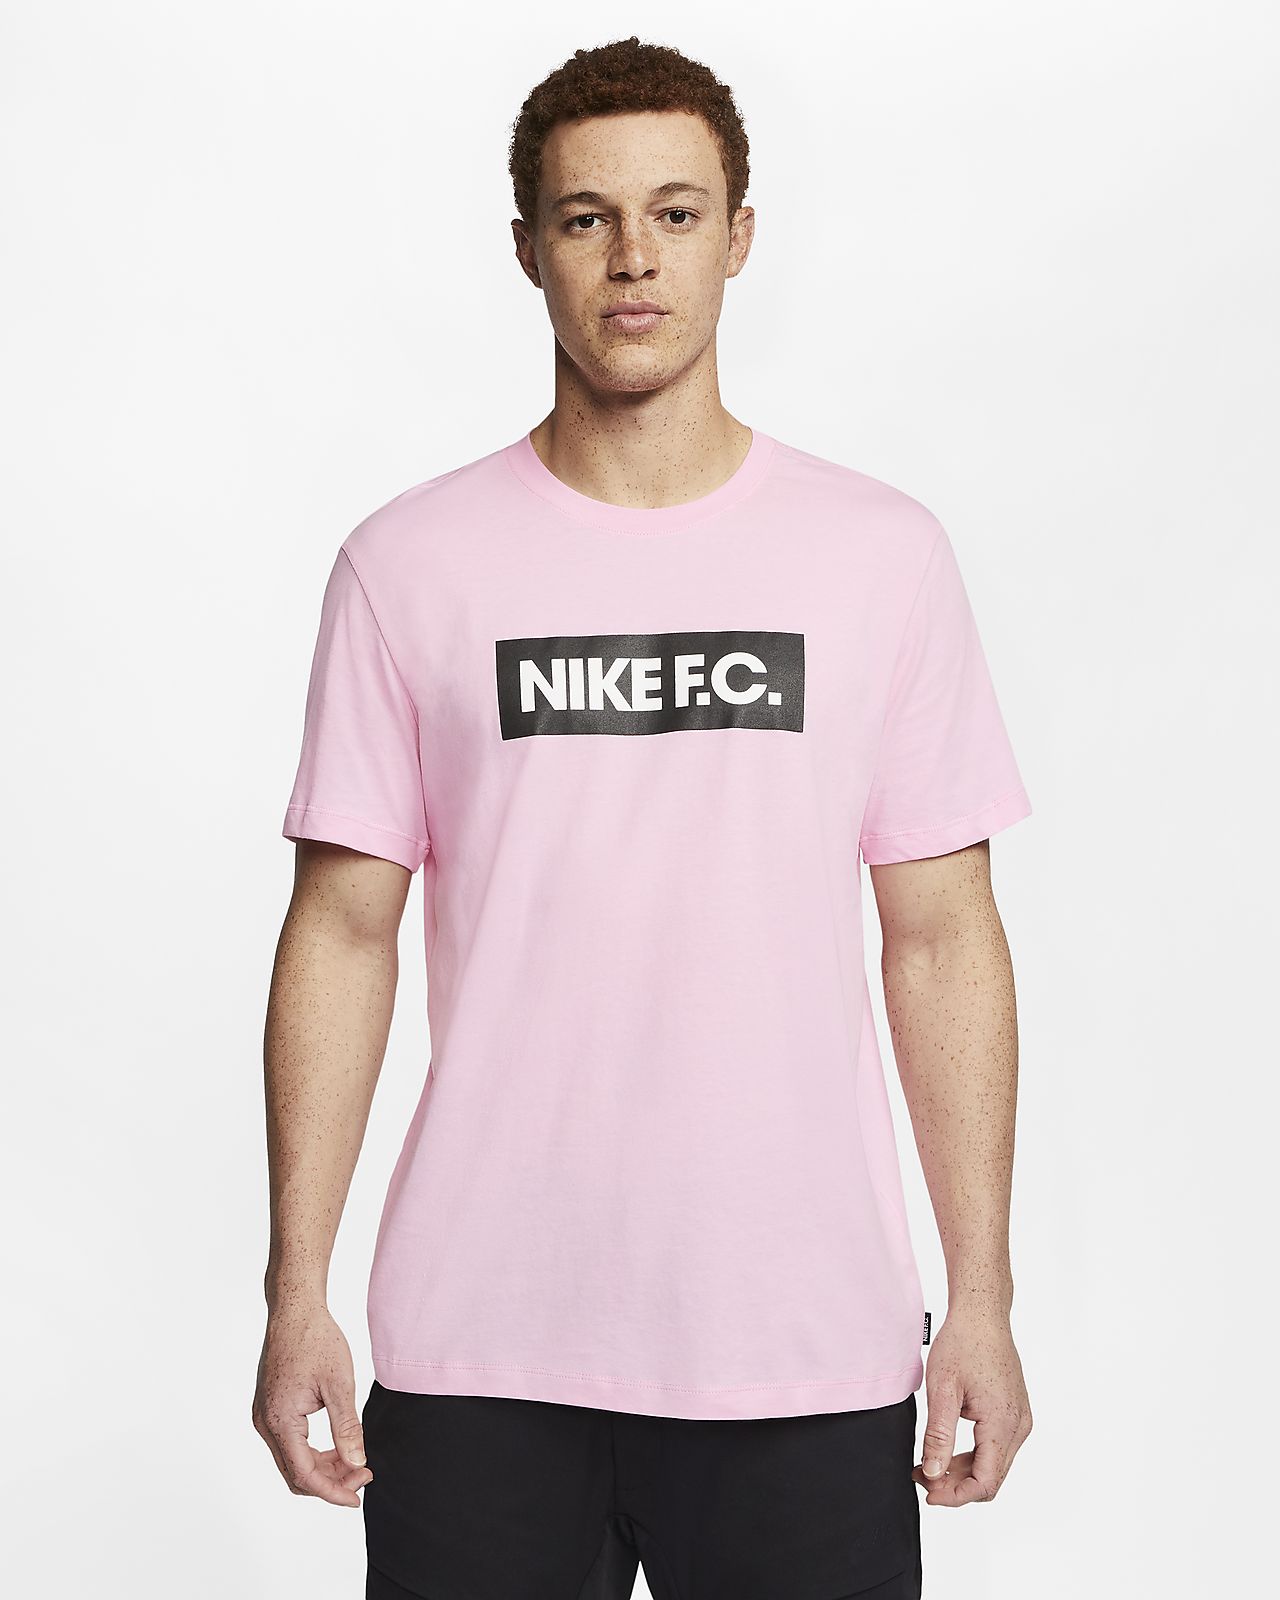 nike fc pink shirt